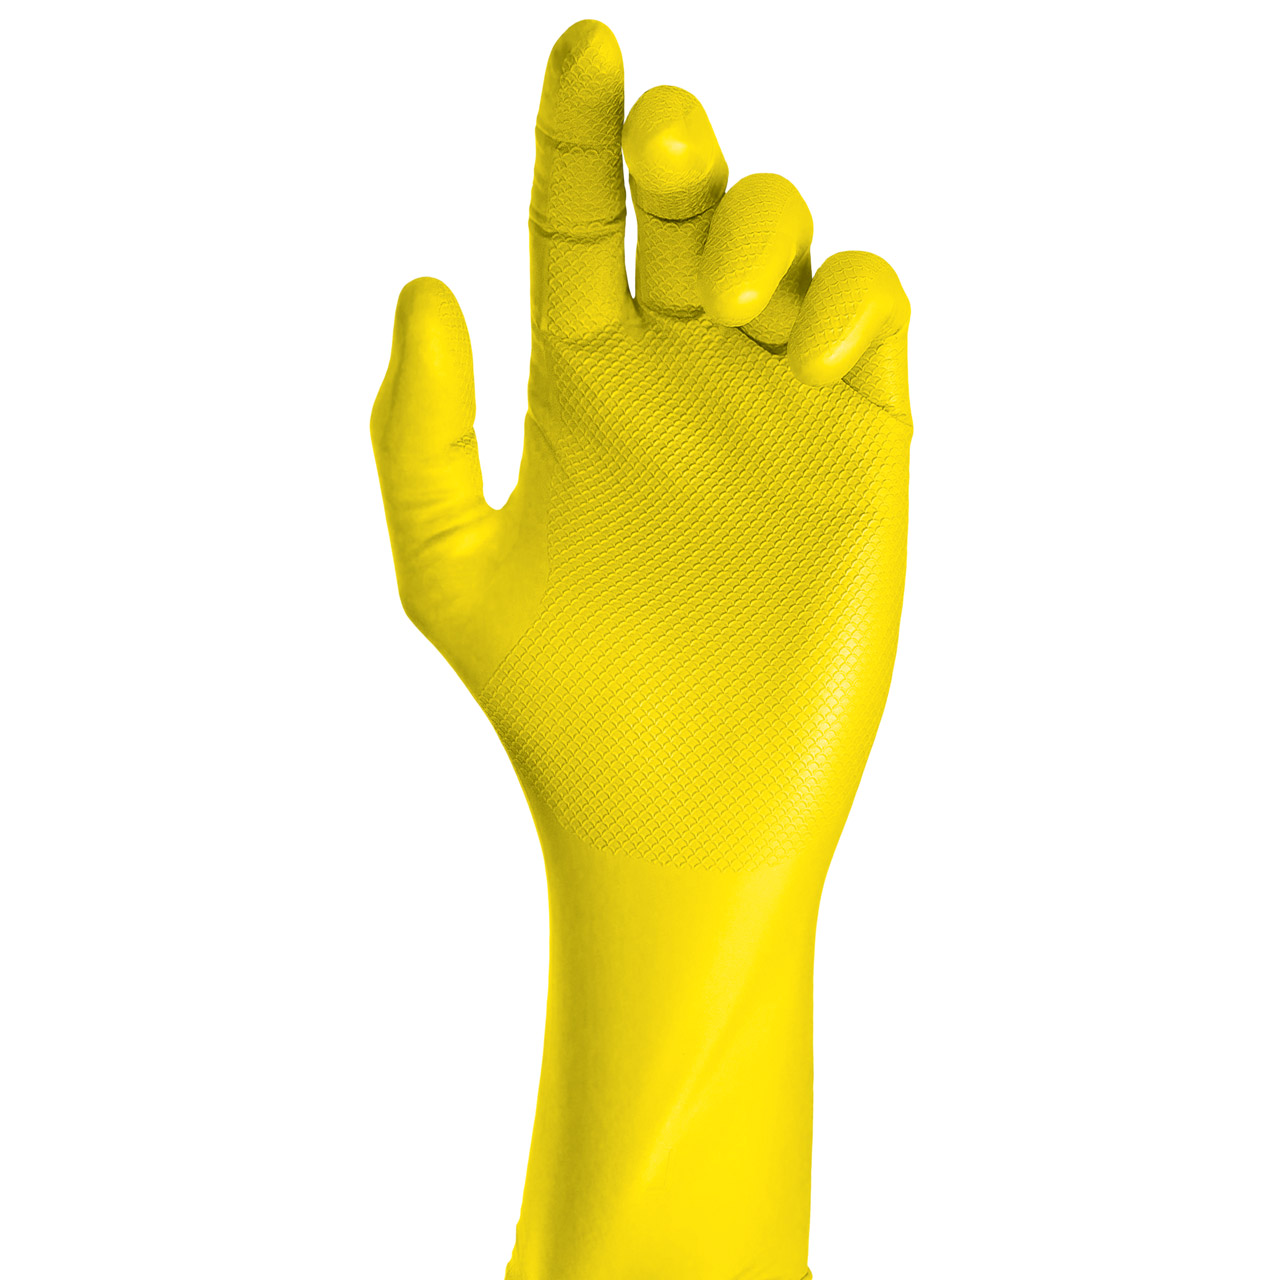 GRIPPAZ 306 Schutzhandschuhe NITRIL Handschuhe GELB Größe M (50 Stück)